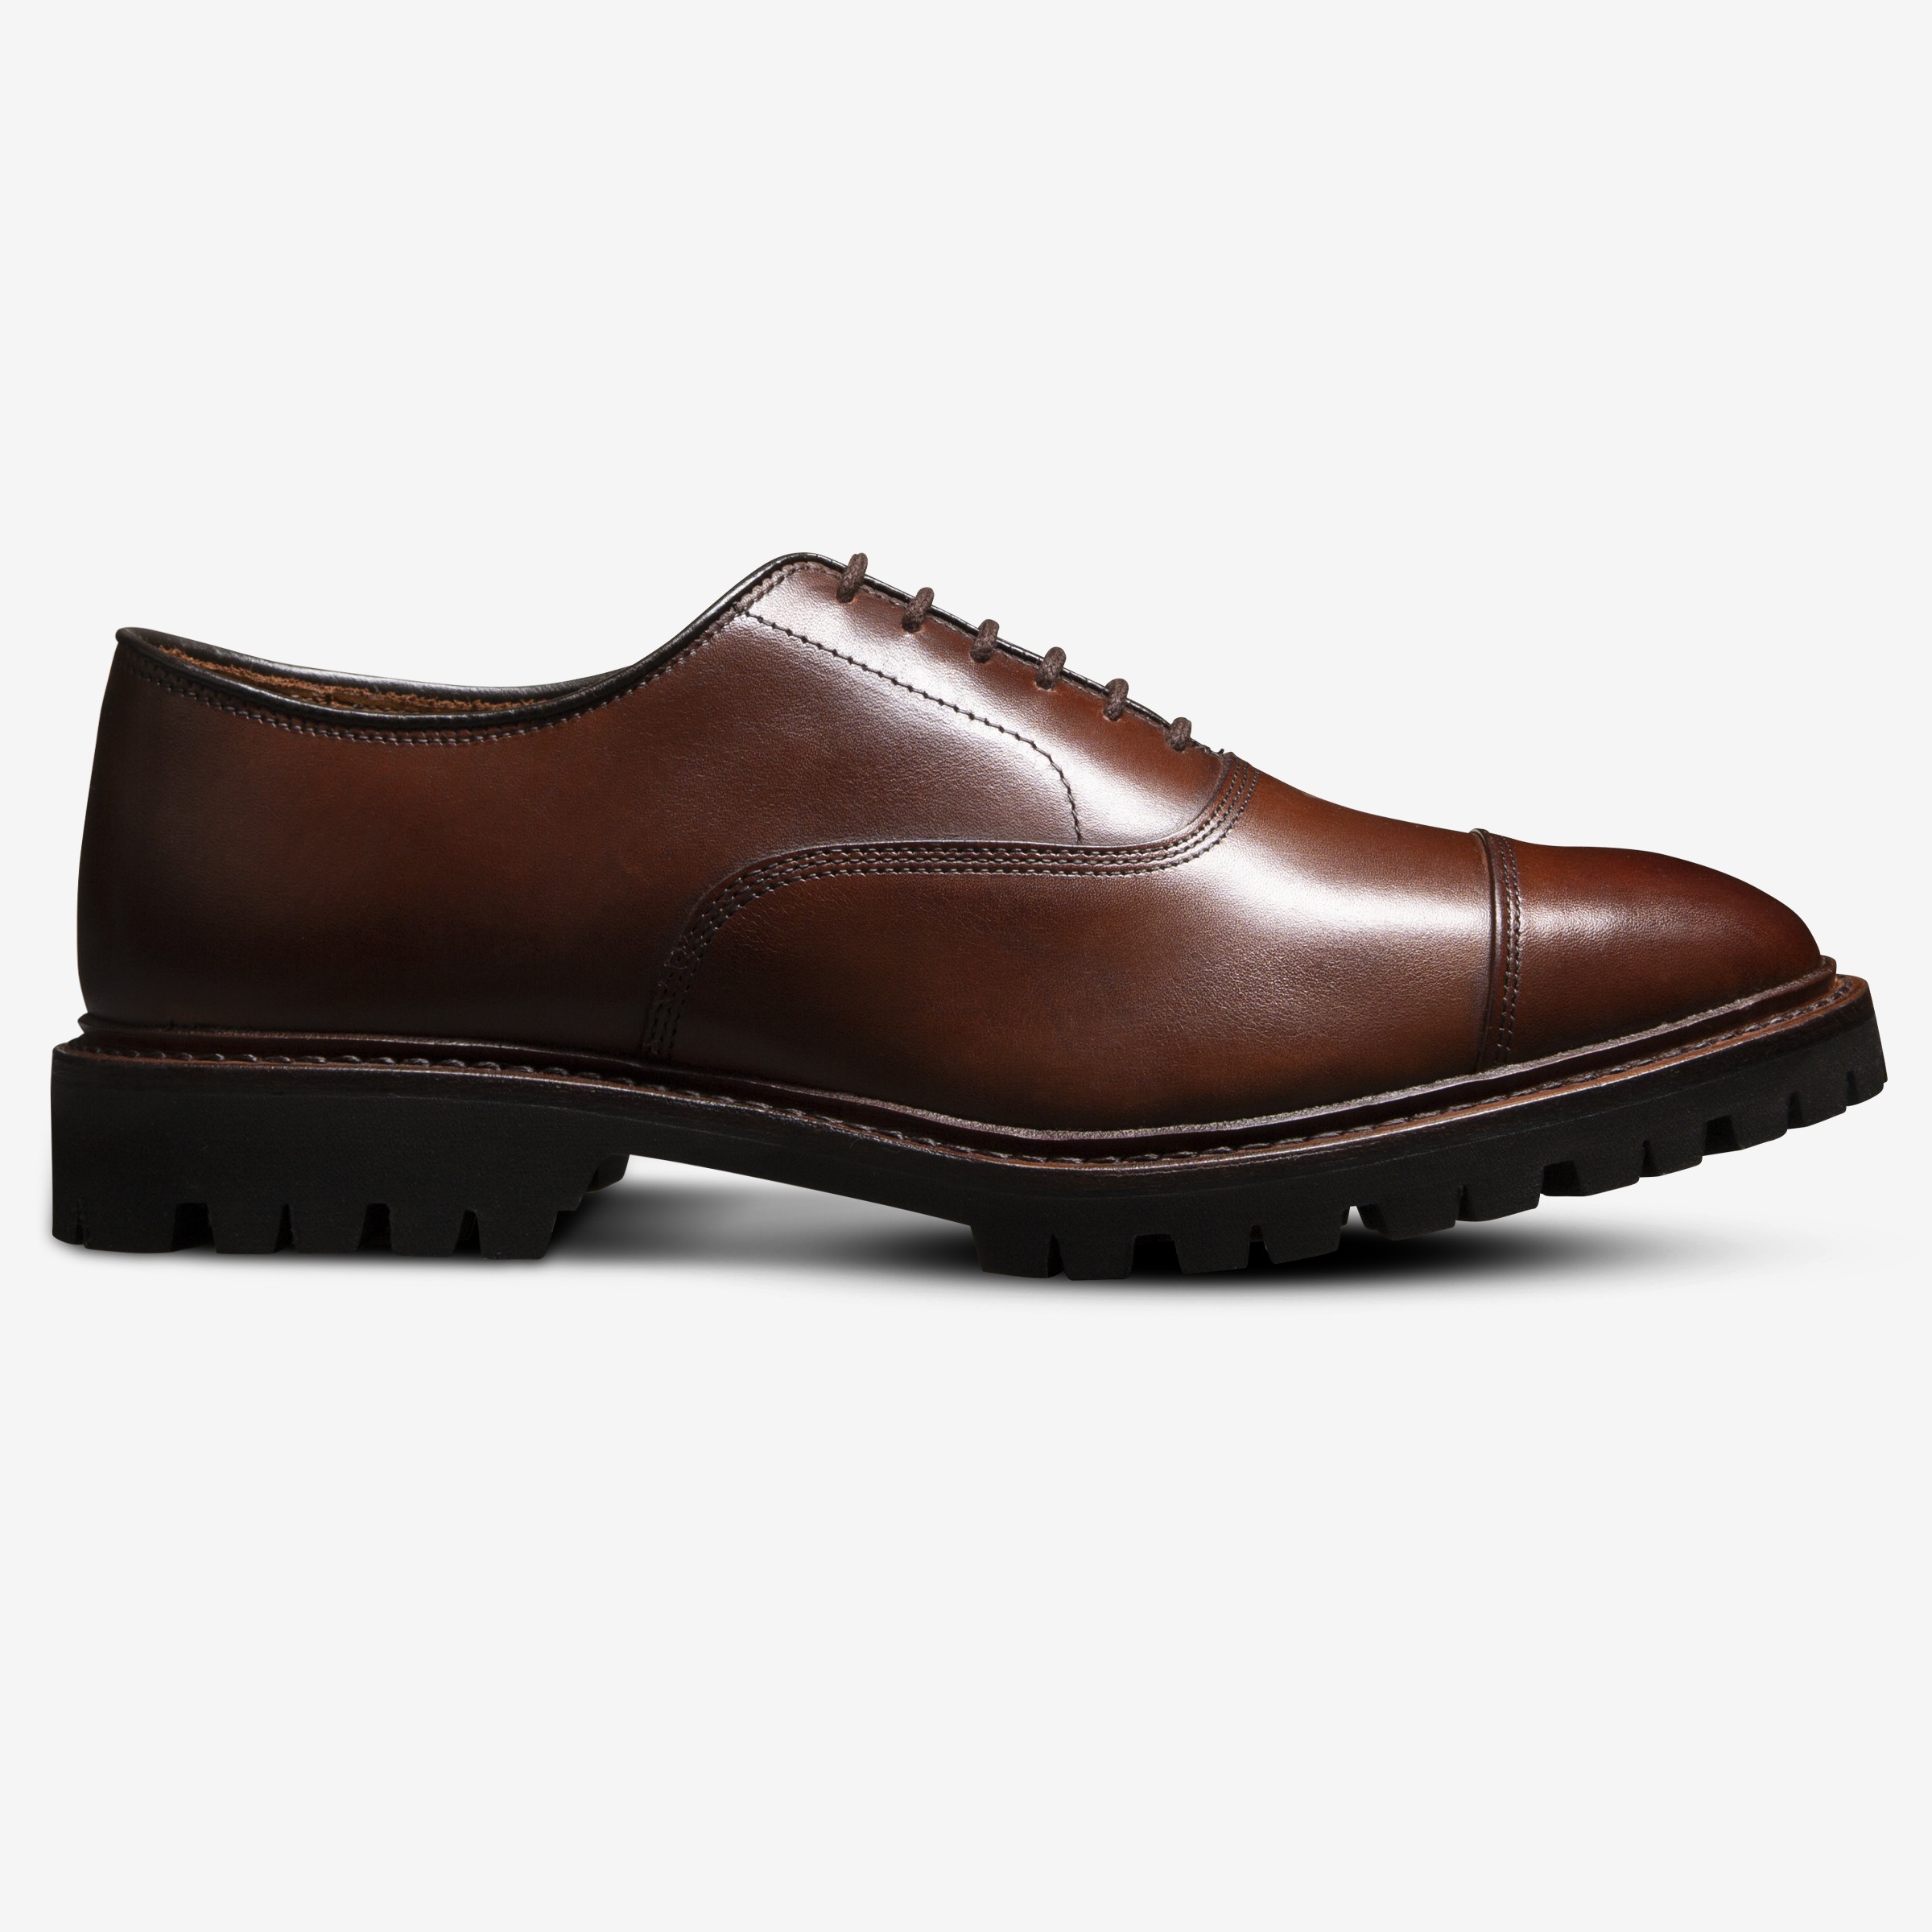 Park Avenue Cap-toe Oxford Dress Shoe with Lug Sole | Men's Dress